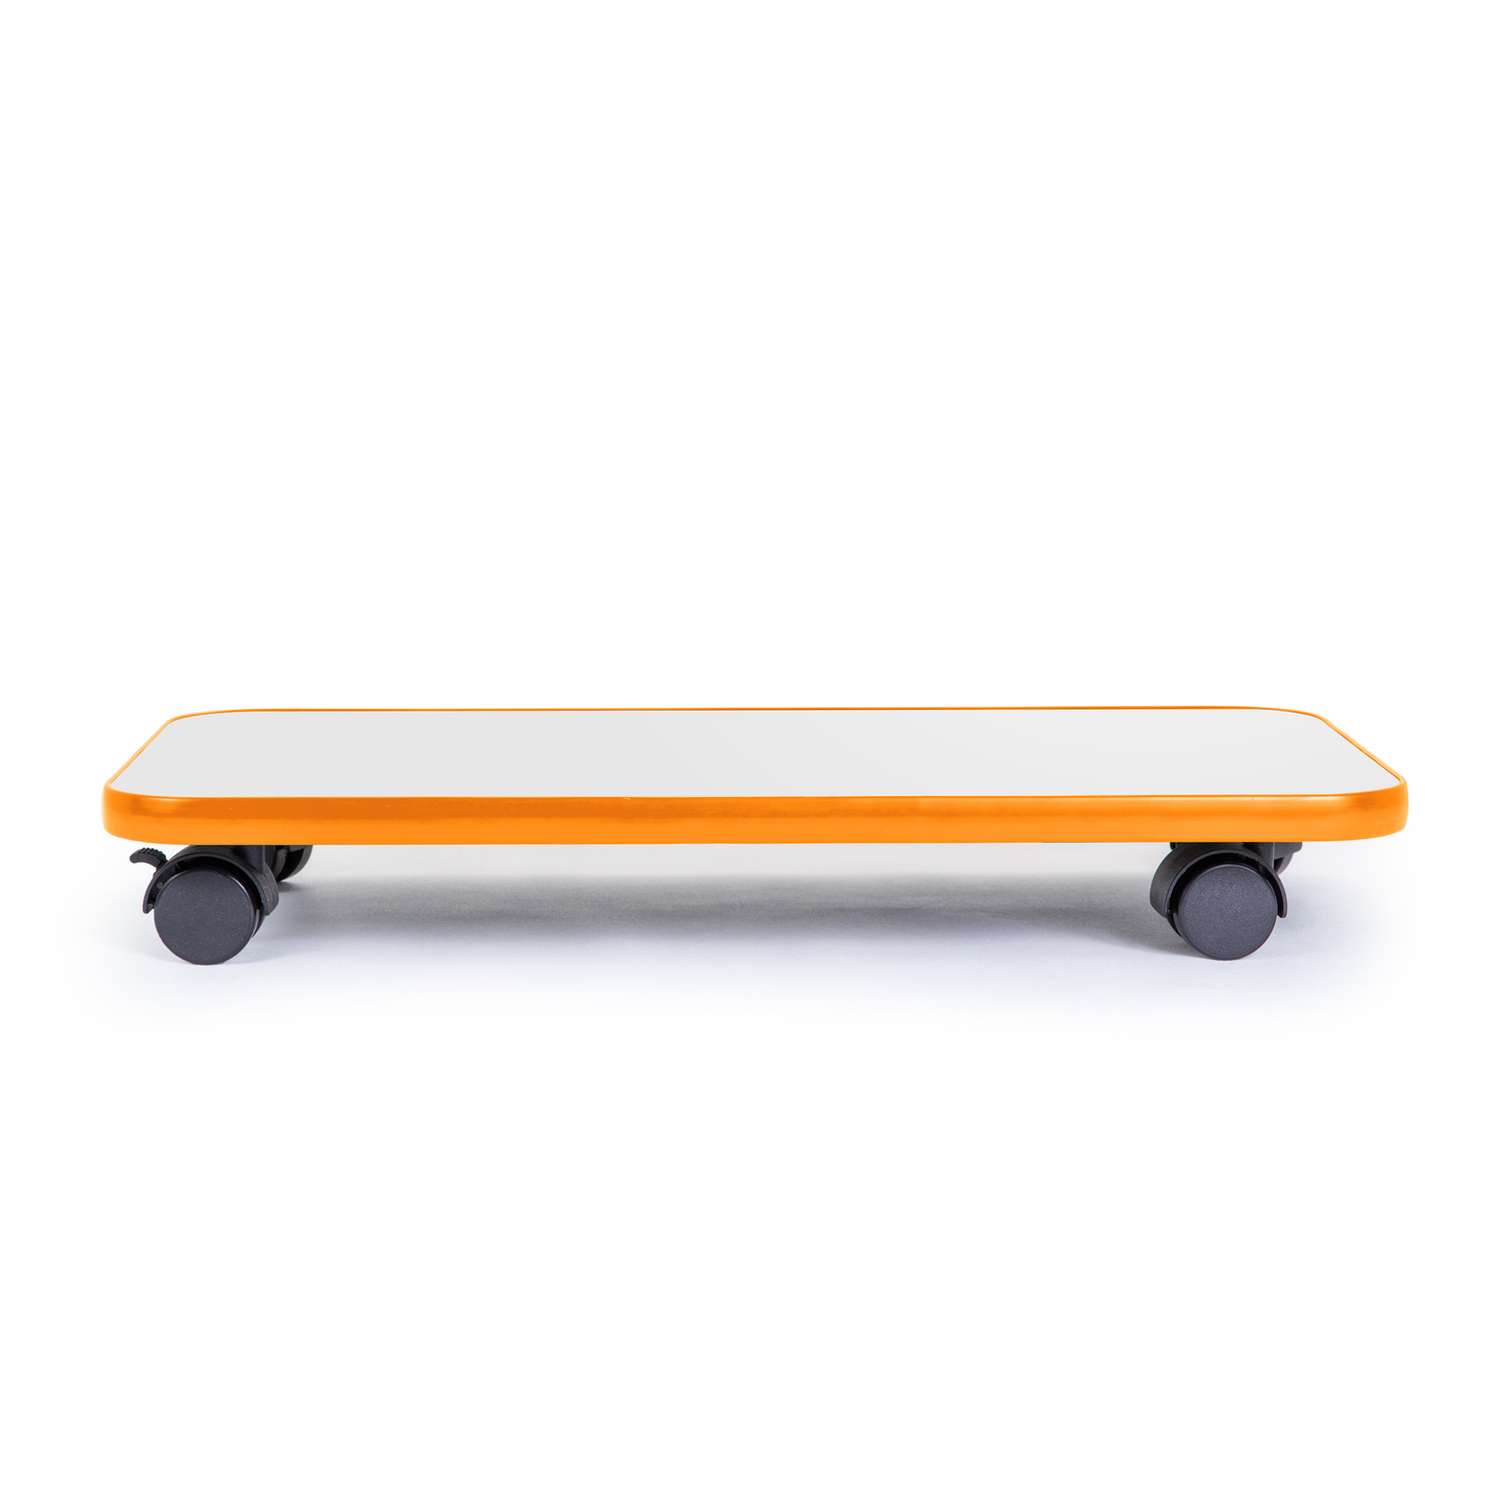 Подставка напольная VMMGAME для системного блока skate light orange - фото 2